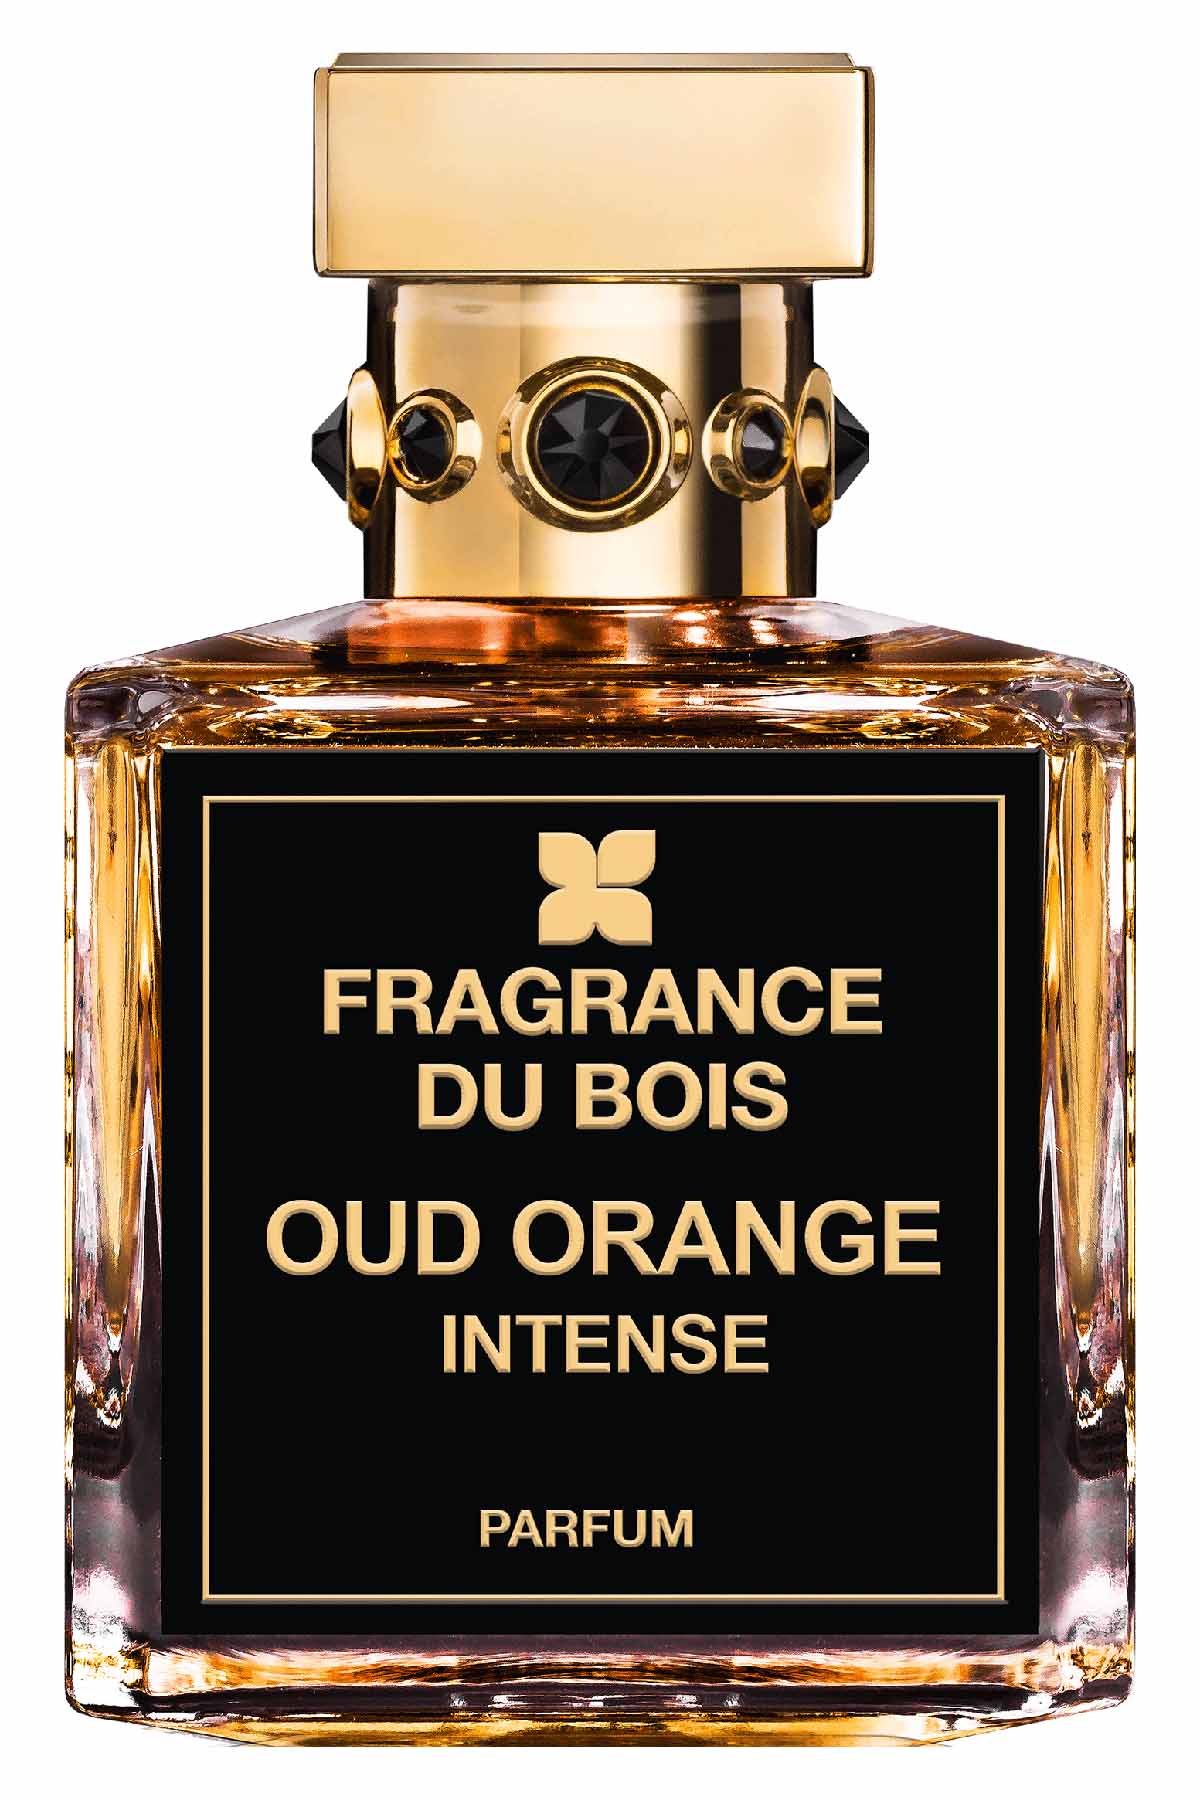 Fragrance Du Bois Oud Orange Intense Parfum